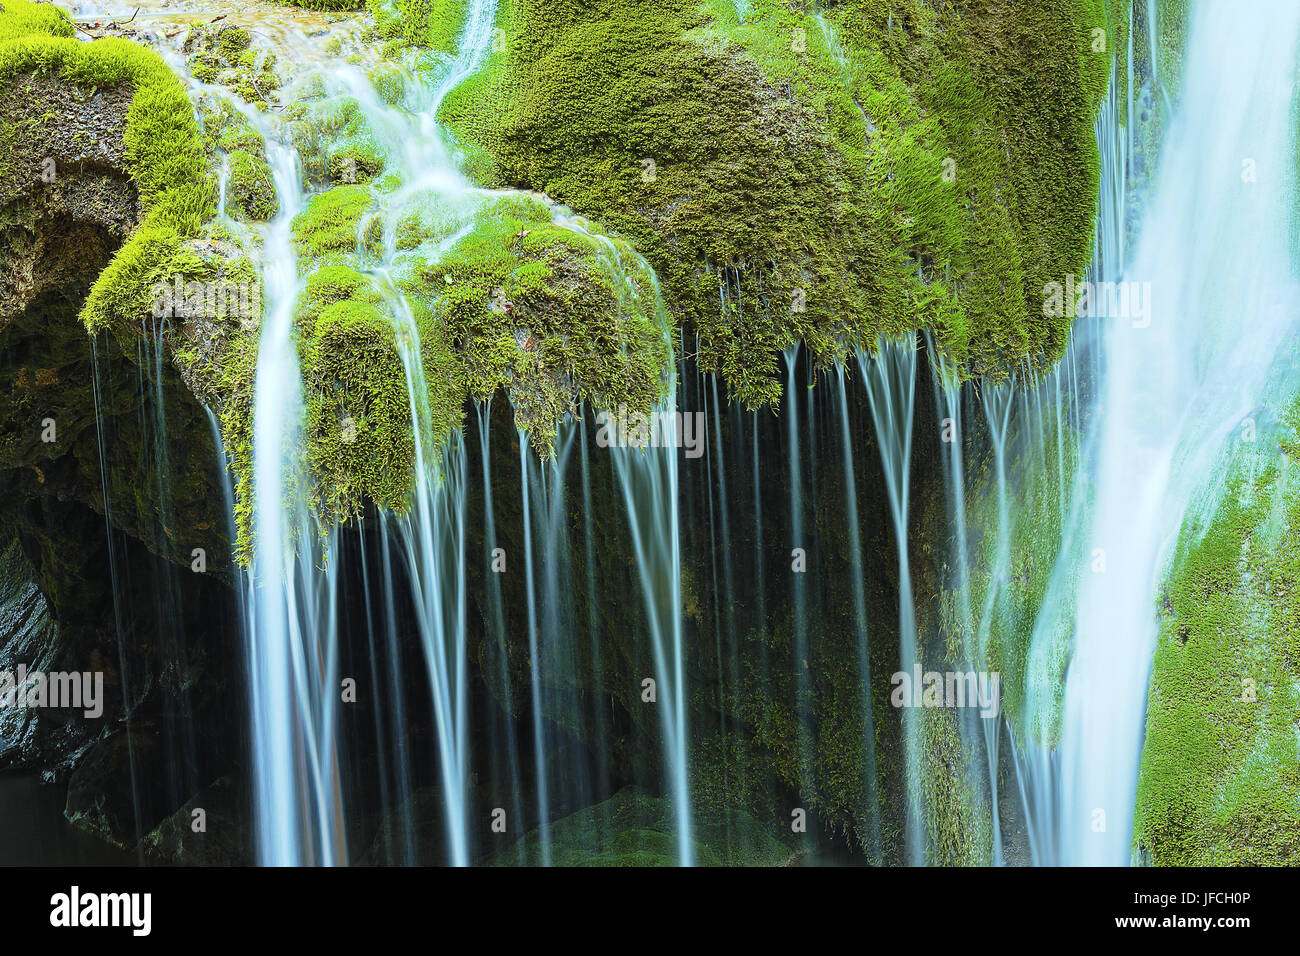 Détail de belle cascade, la cascade Bigar dans Caras Severin, Roumanie Banque D'Images